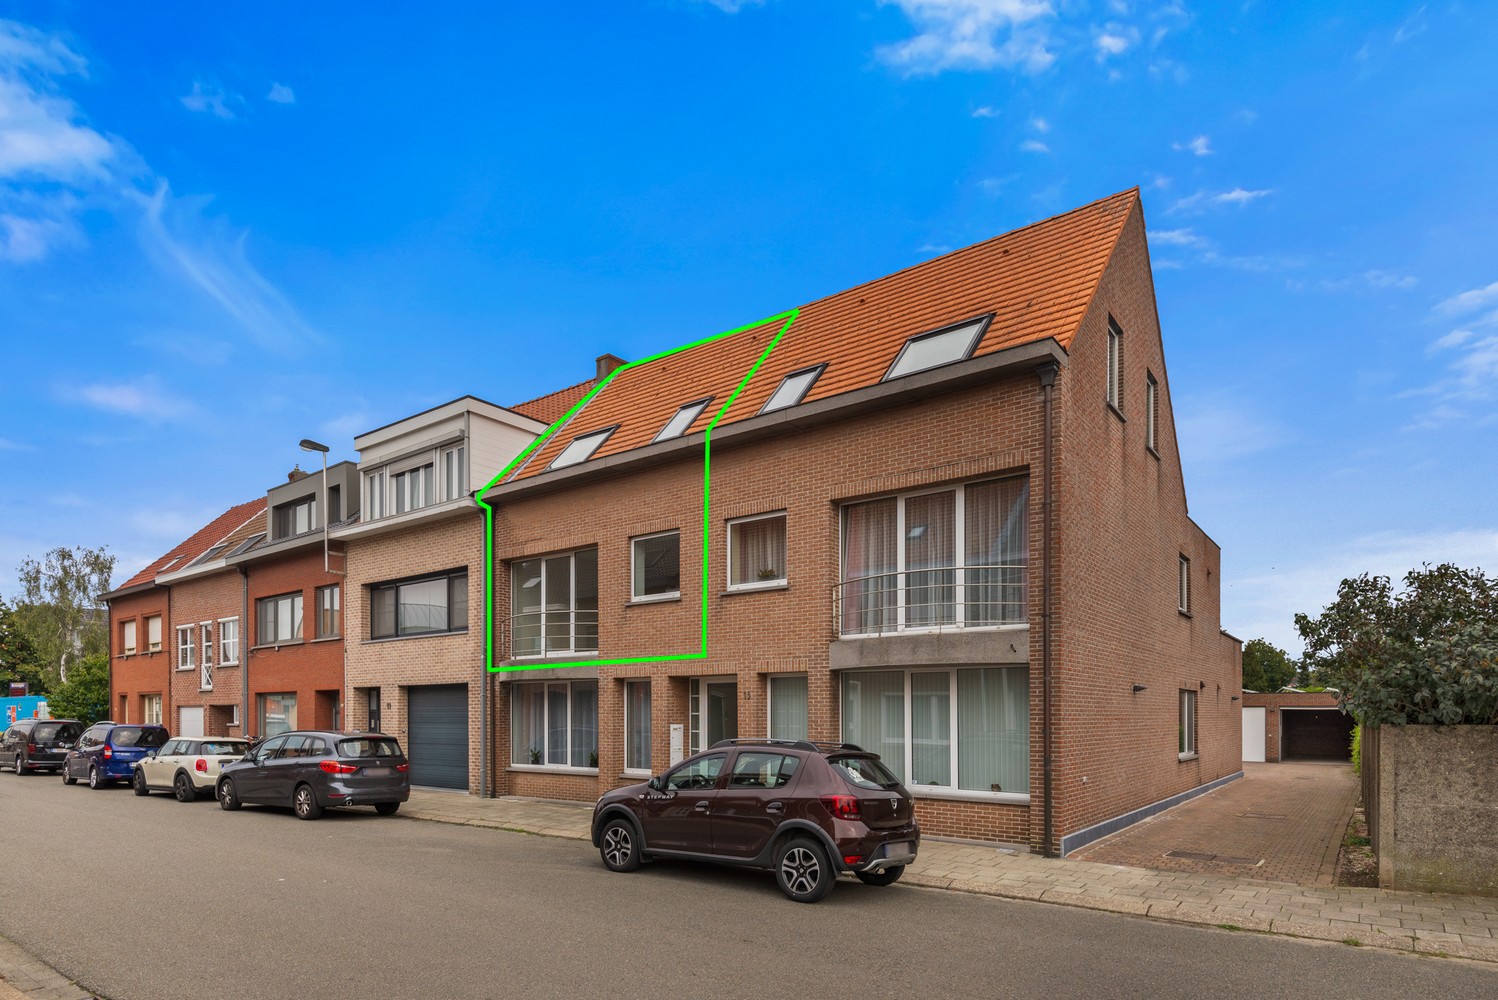 Tof duplexappartement met 2 slaapkamers, terras & garagebox in hartje Wommelgem! afbeelding 1